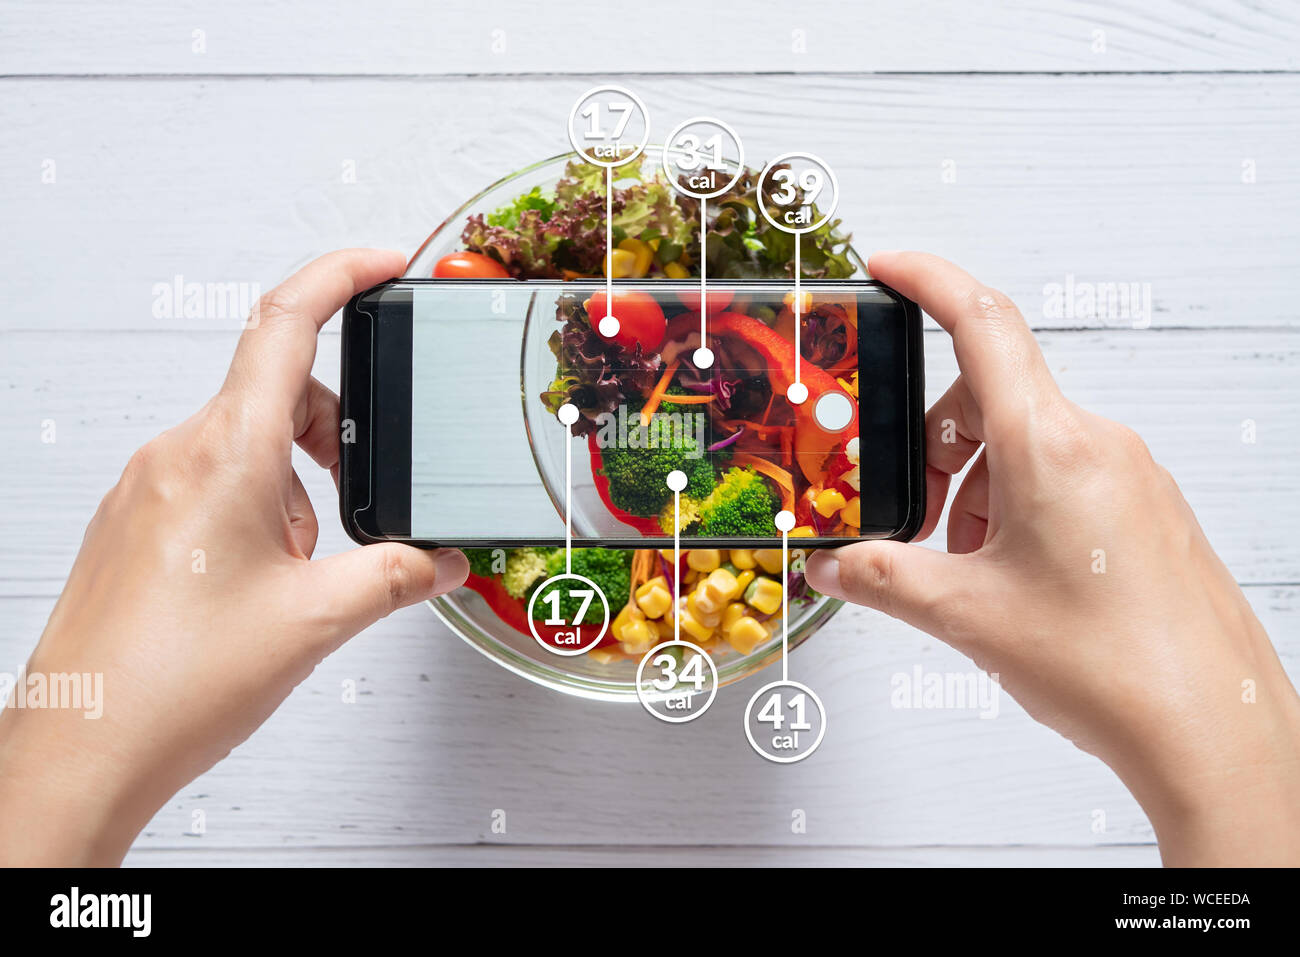 Conteo de calorías y el control de los alimentos concepto. Mujer usando la aplicación en el smartphone para escanear la cantidad de calorías en los alimentos antes de comer Foto de stock